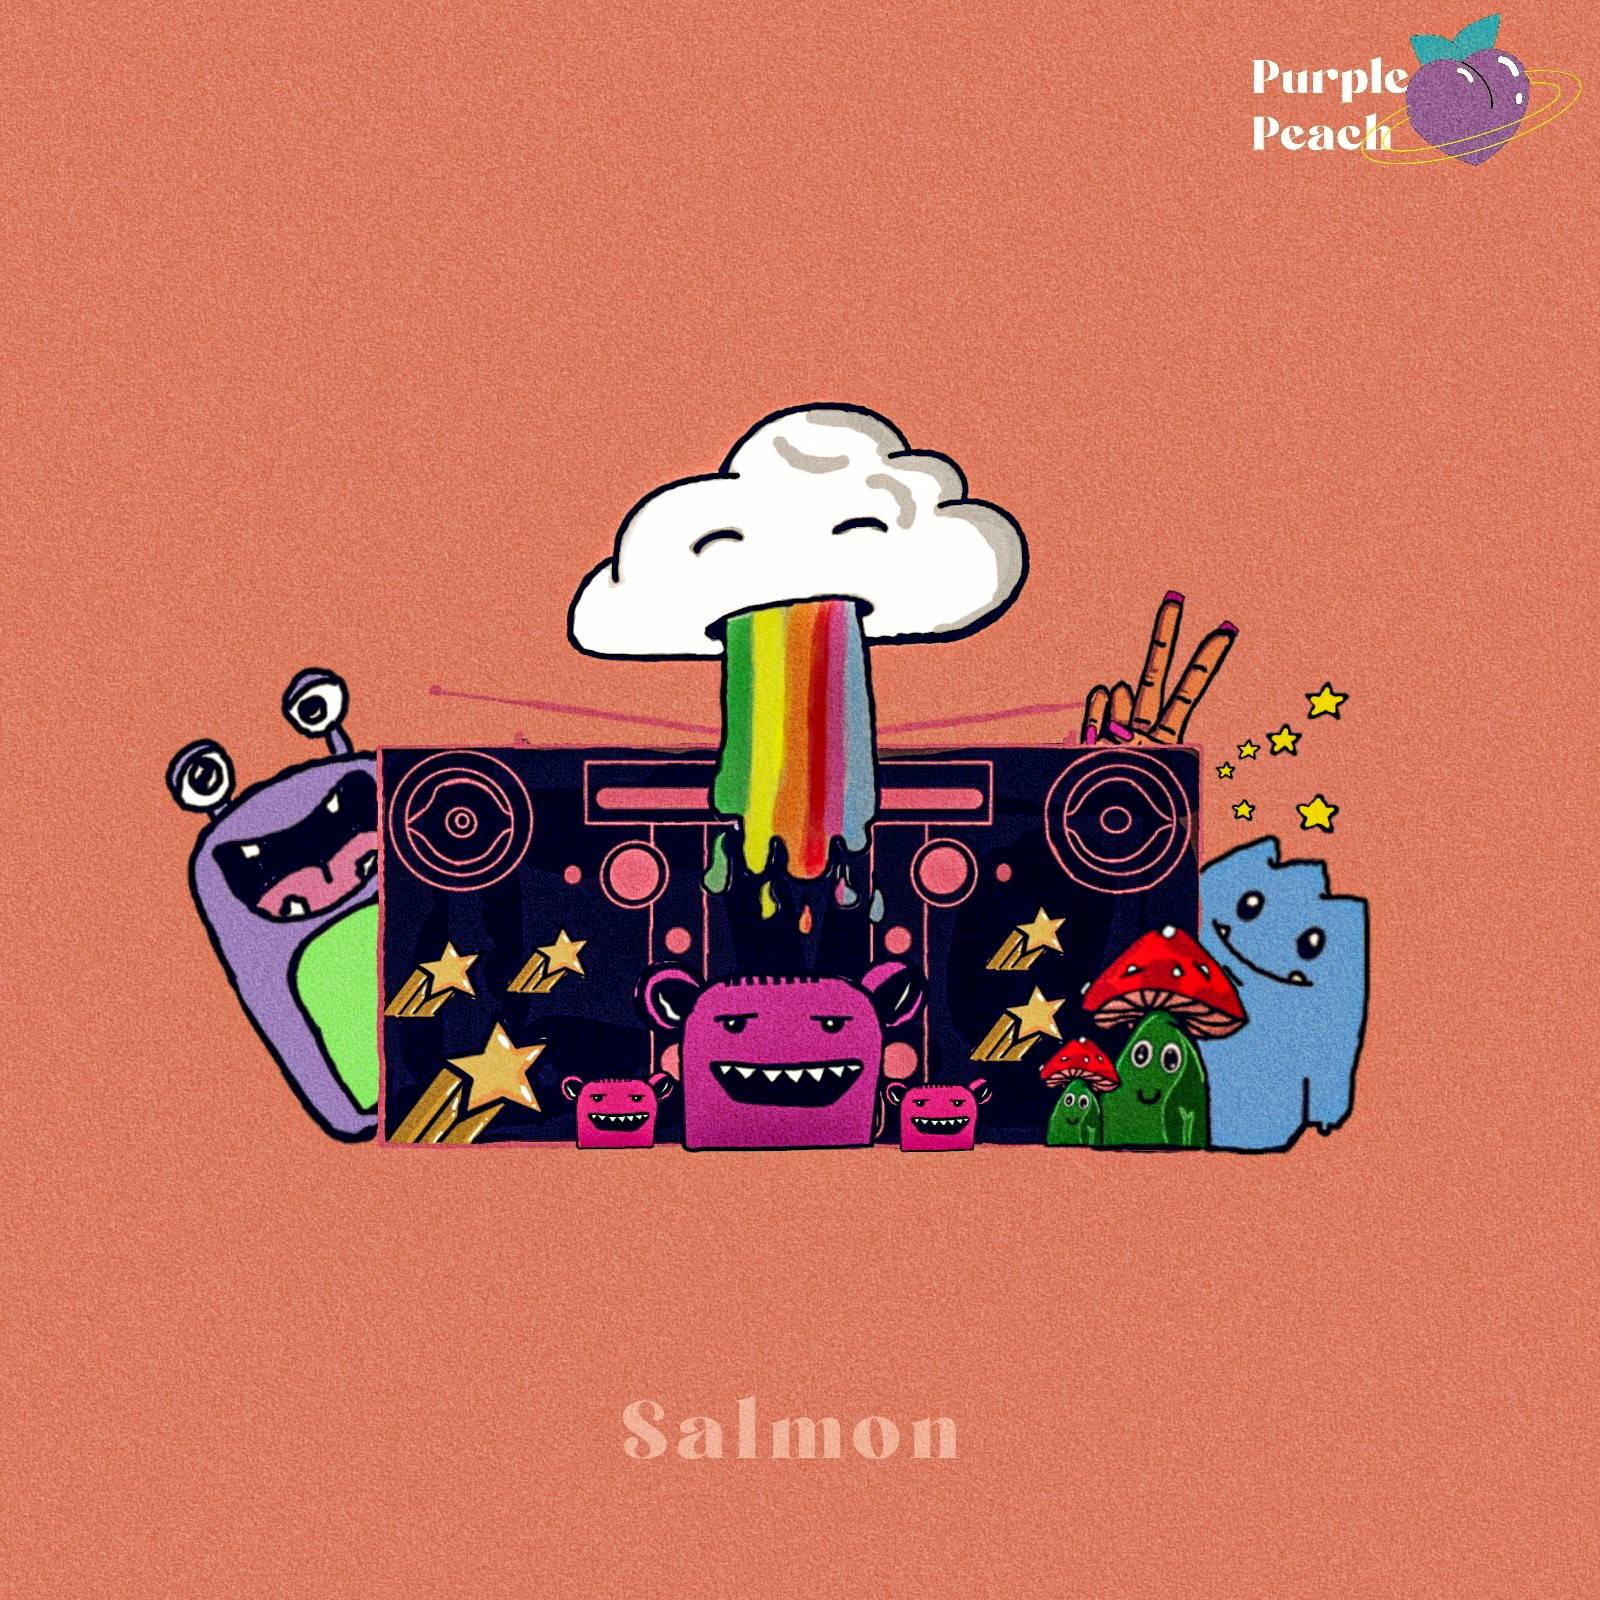 Purple Peach Records - Salmon